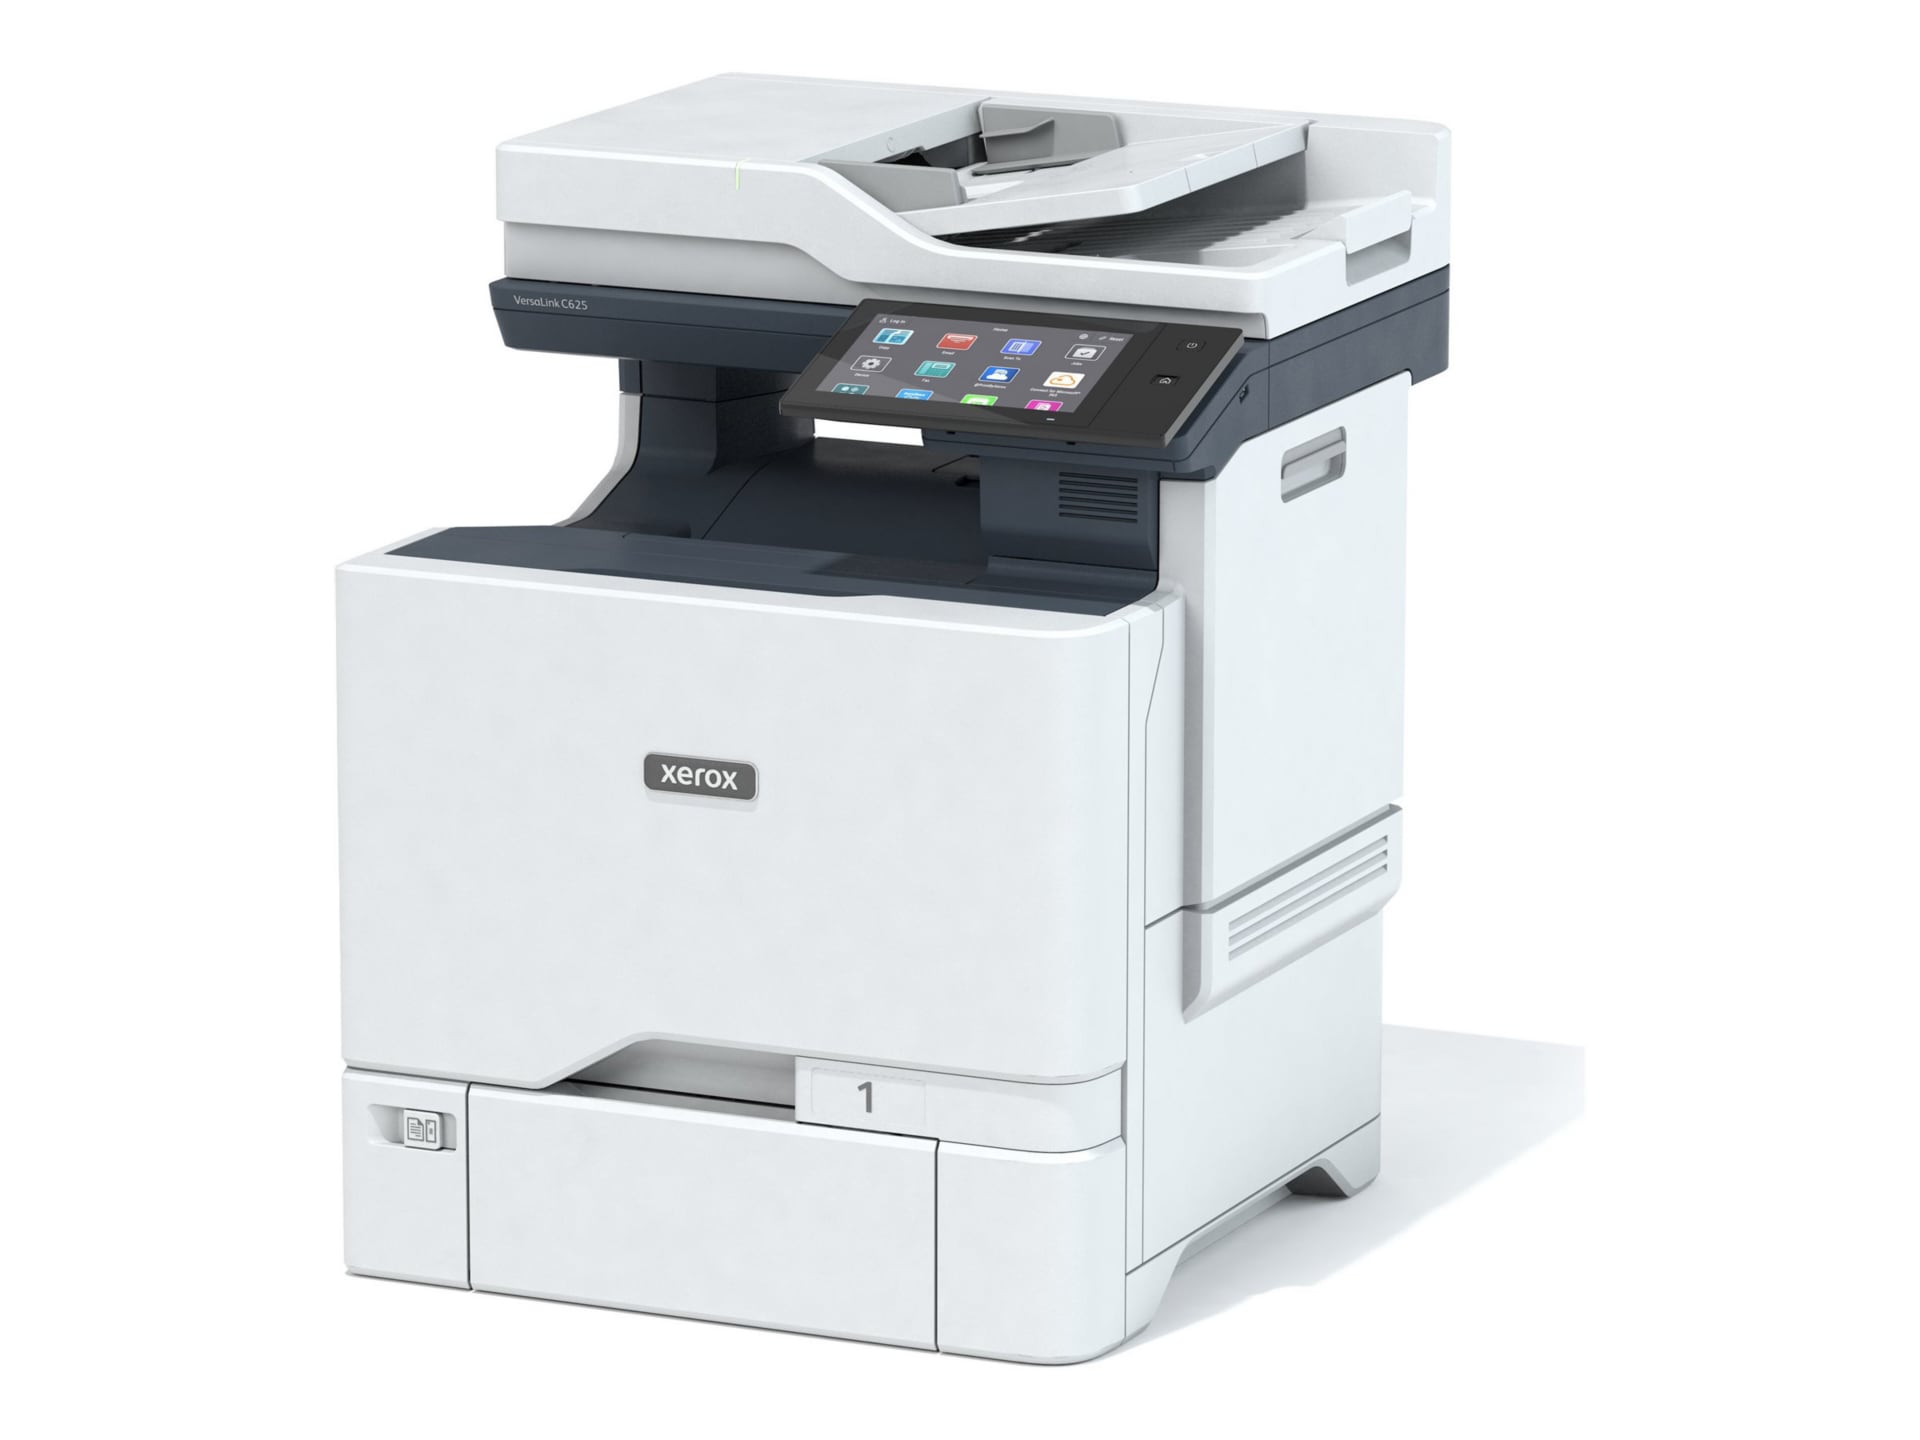 Xerox VersaLink C625/DN - multifunction printer - color